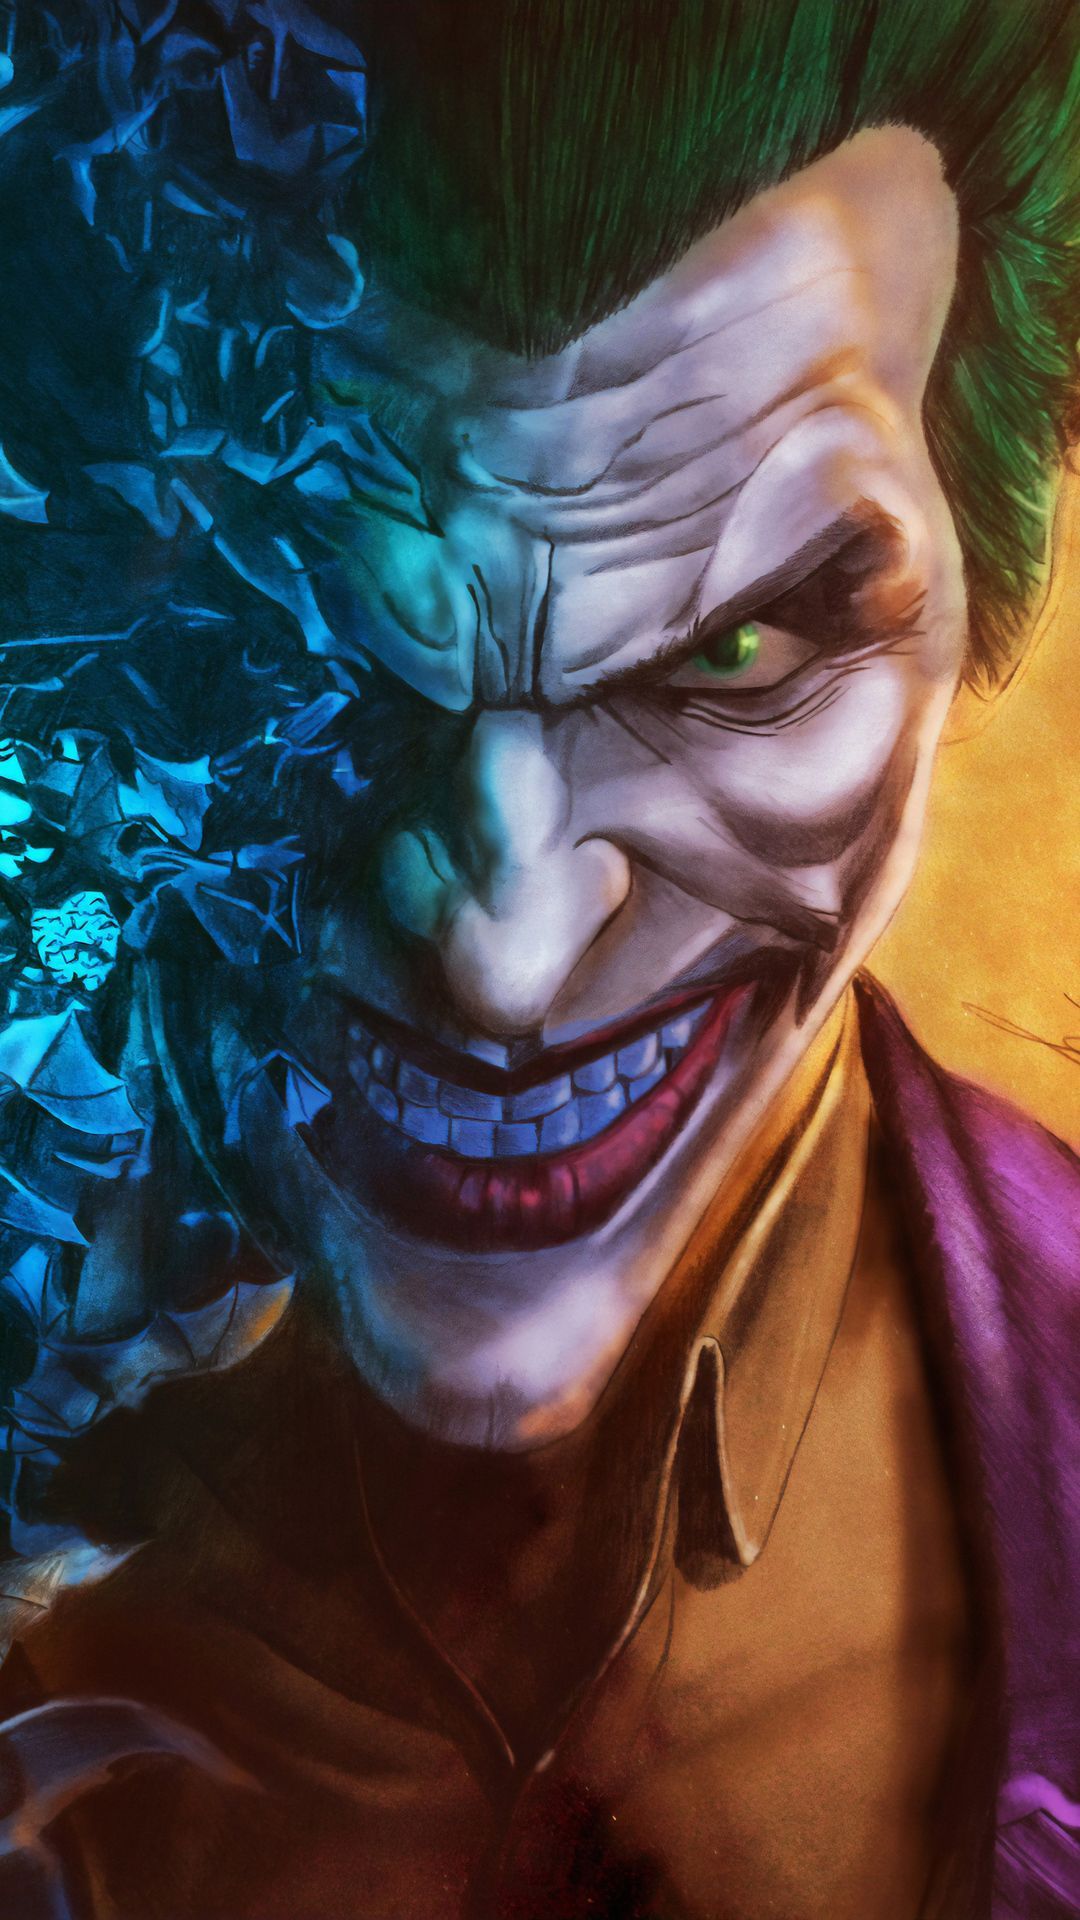 Batman And Joker Face Art Wallpapers